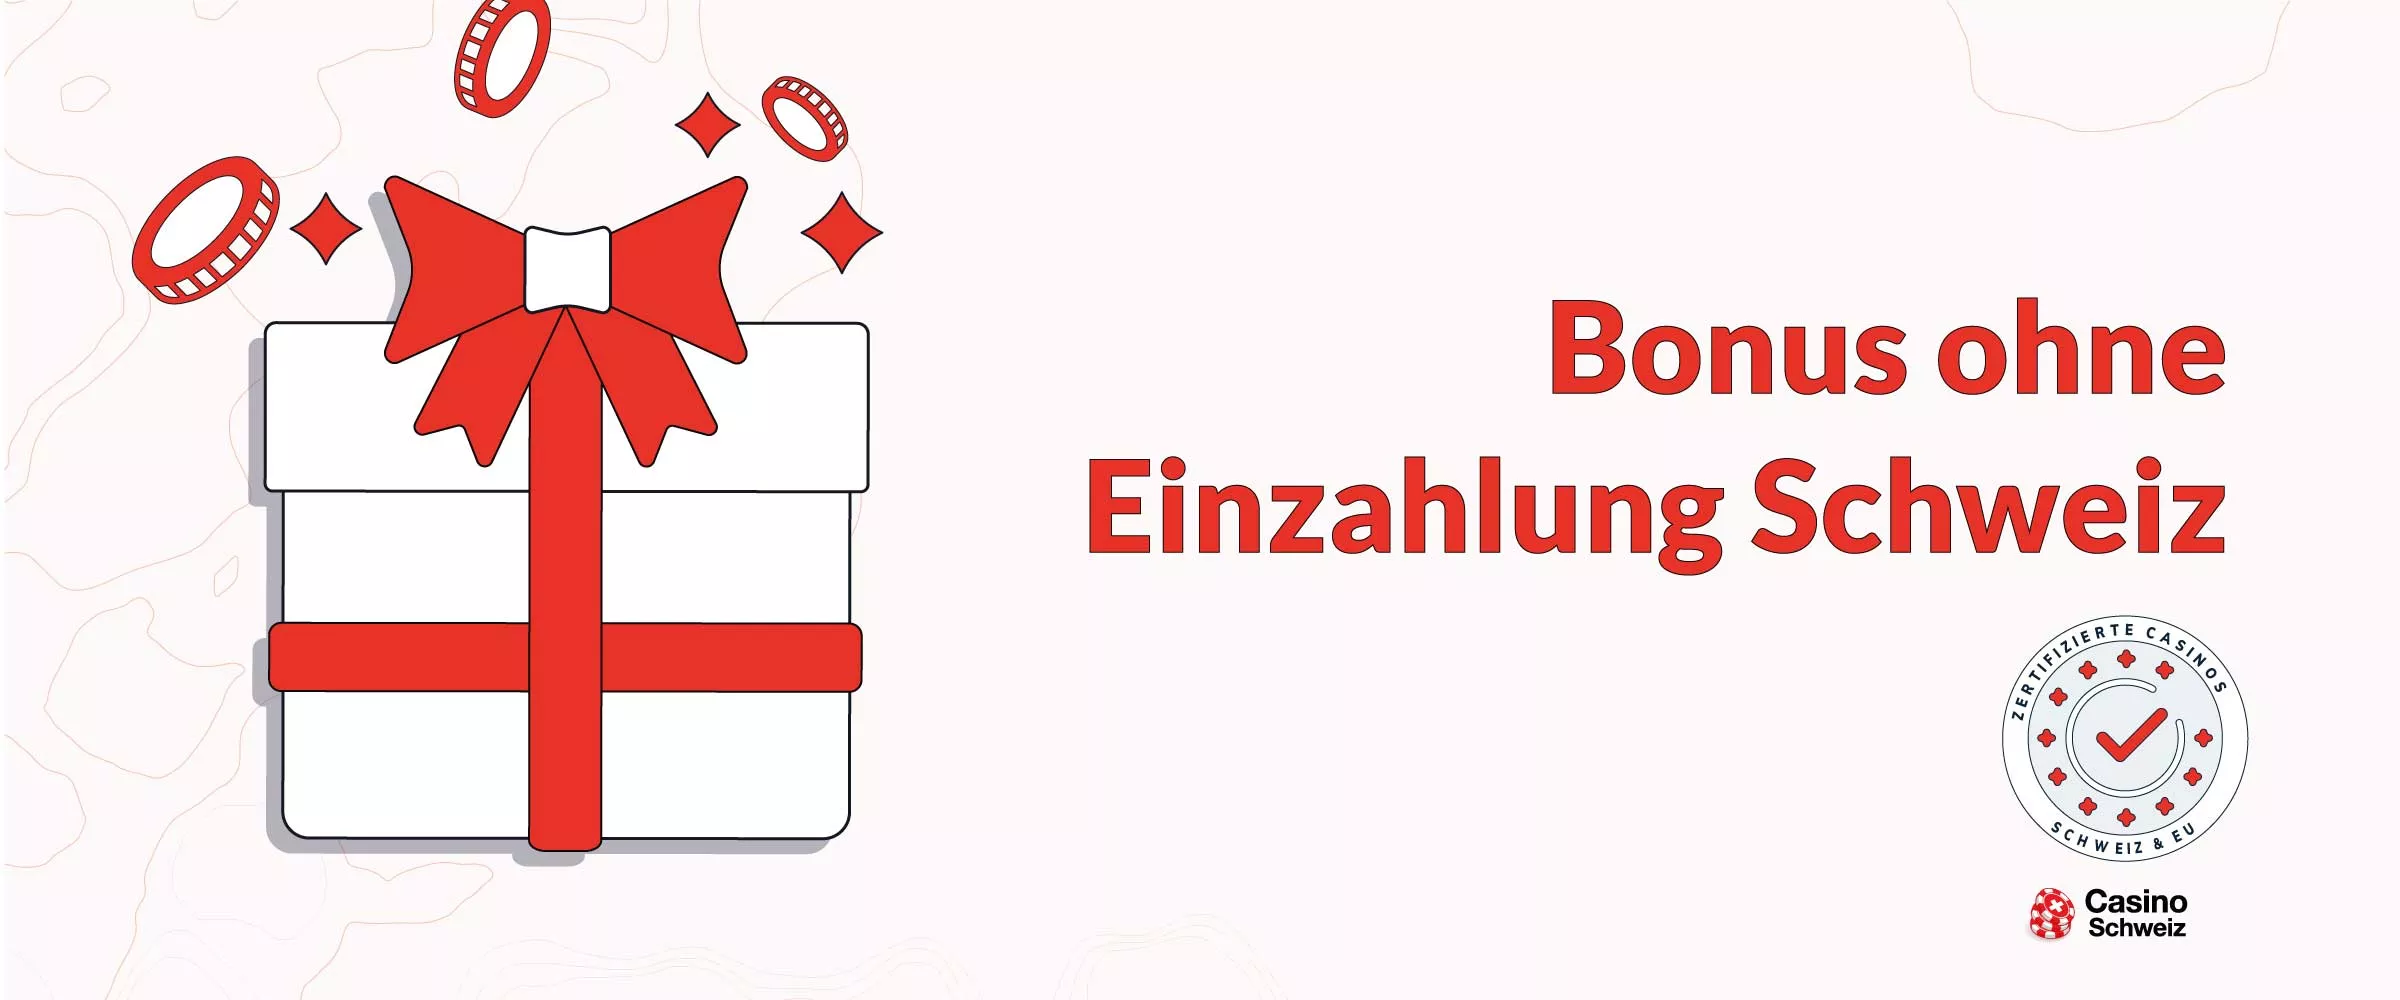 Bonus ohne Einzahlung Schweiz